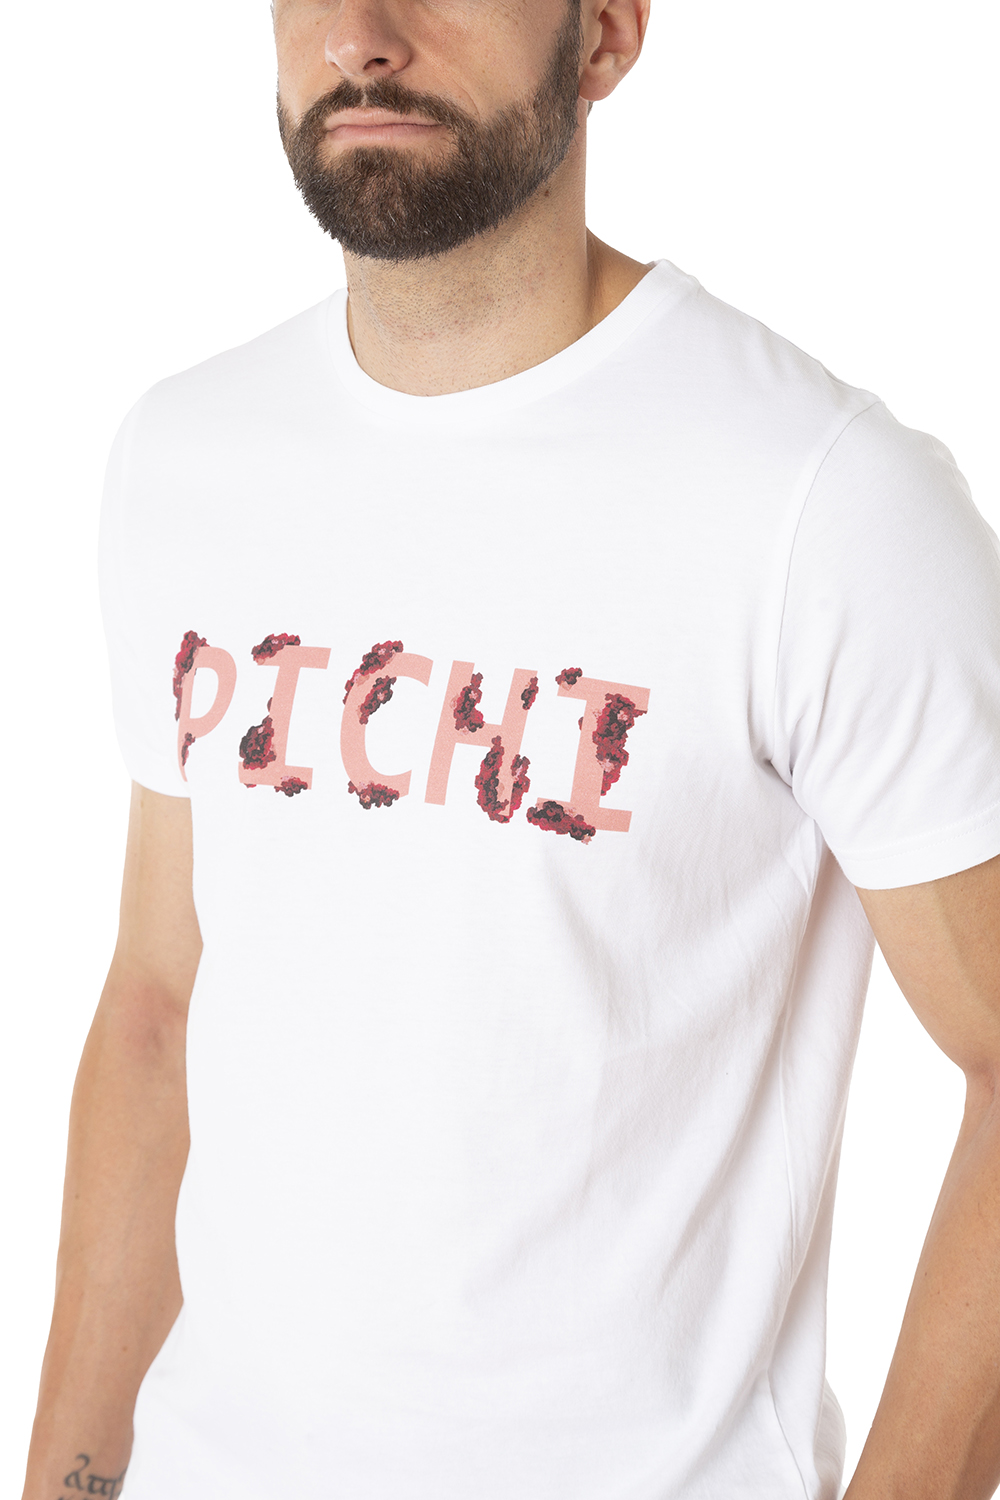 Camiseta Maki Pichi